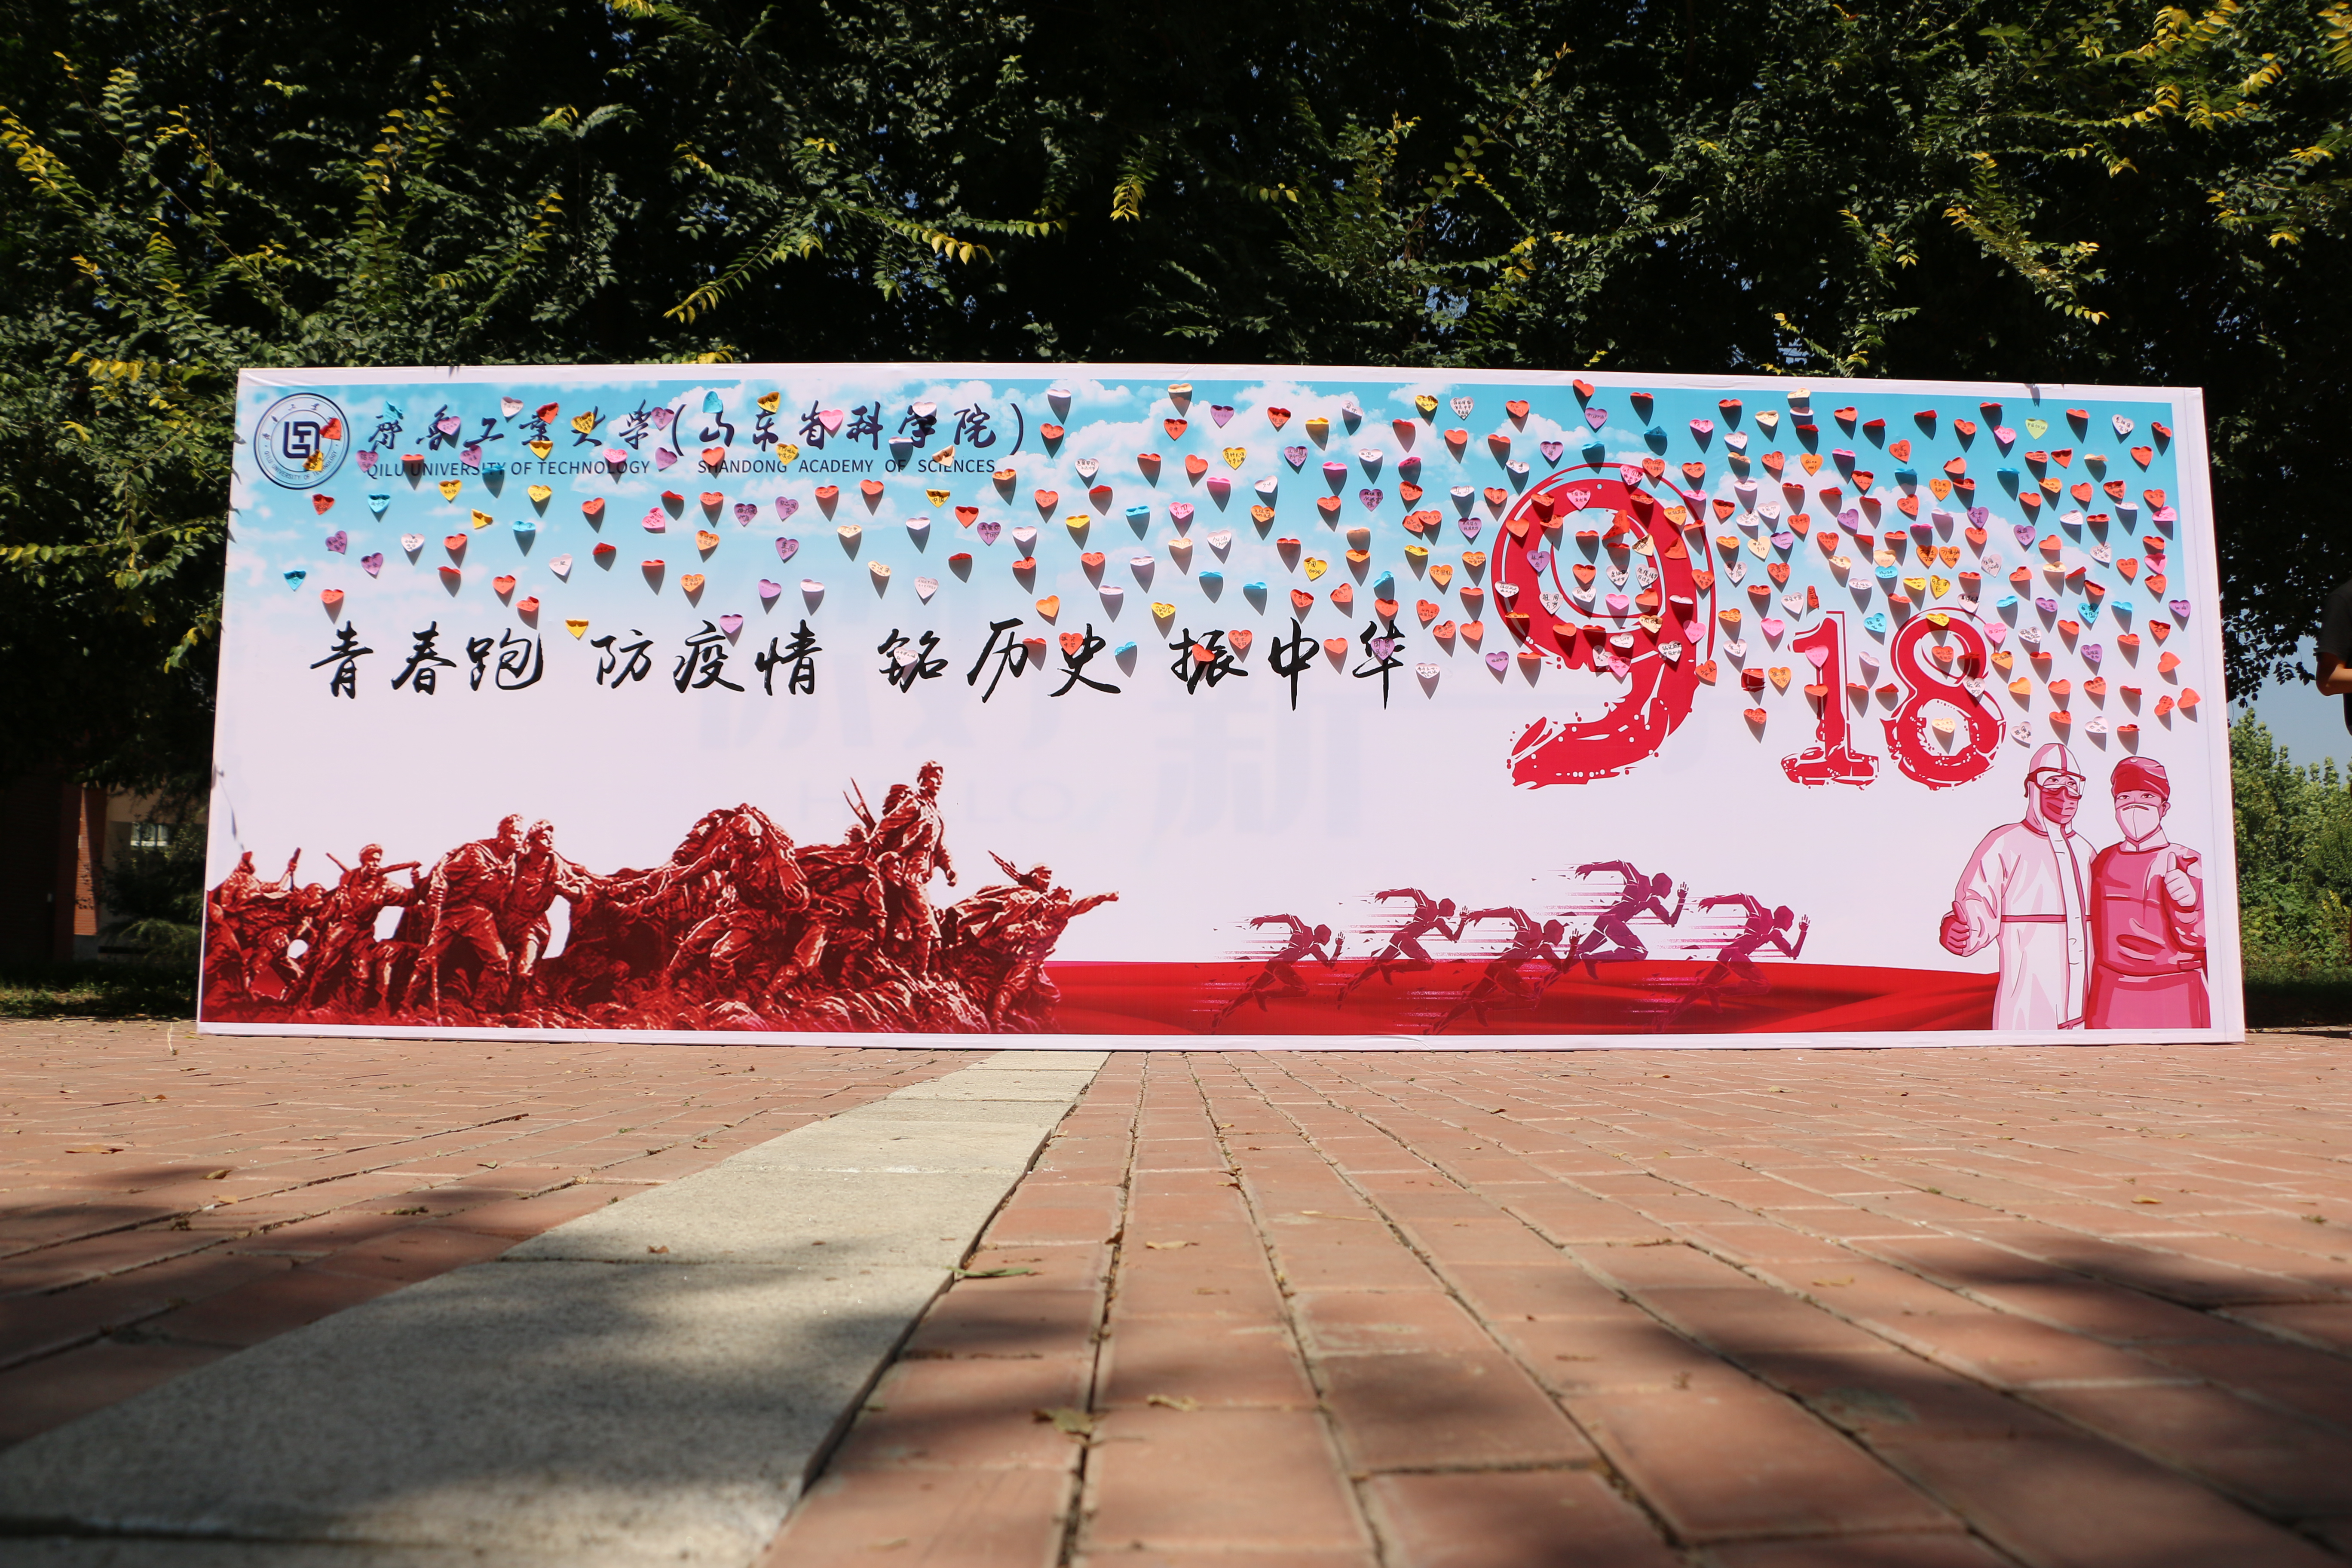 齐鲁工业大学菏泽校区举办 纪念“九一八”事变89周年系列活动